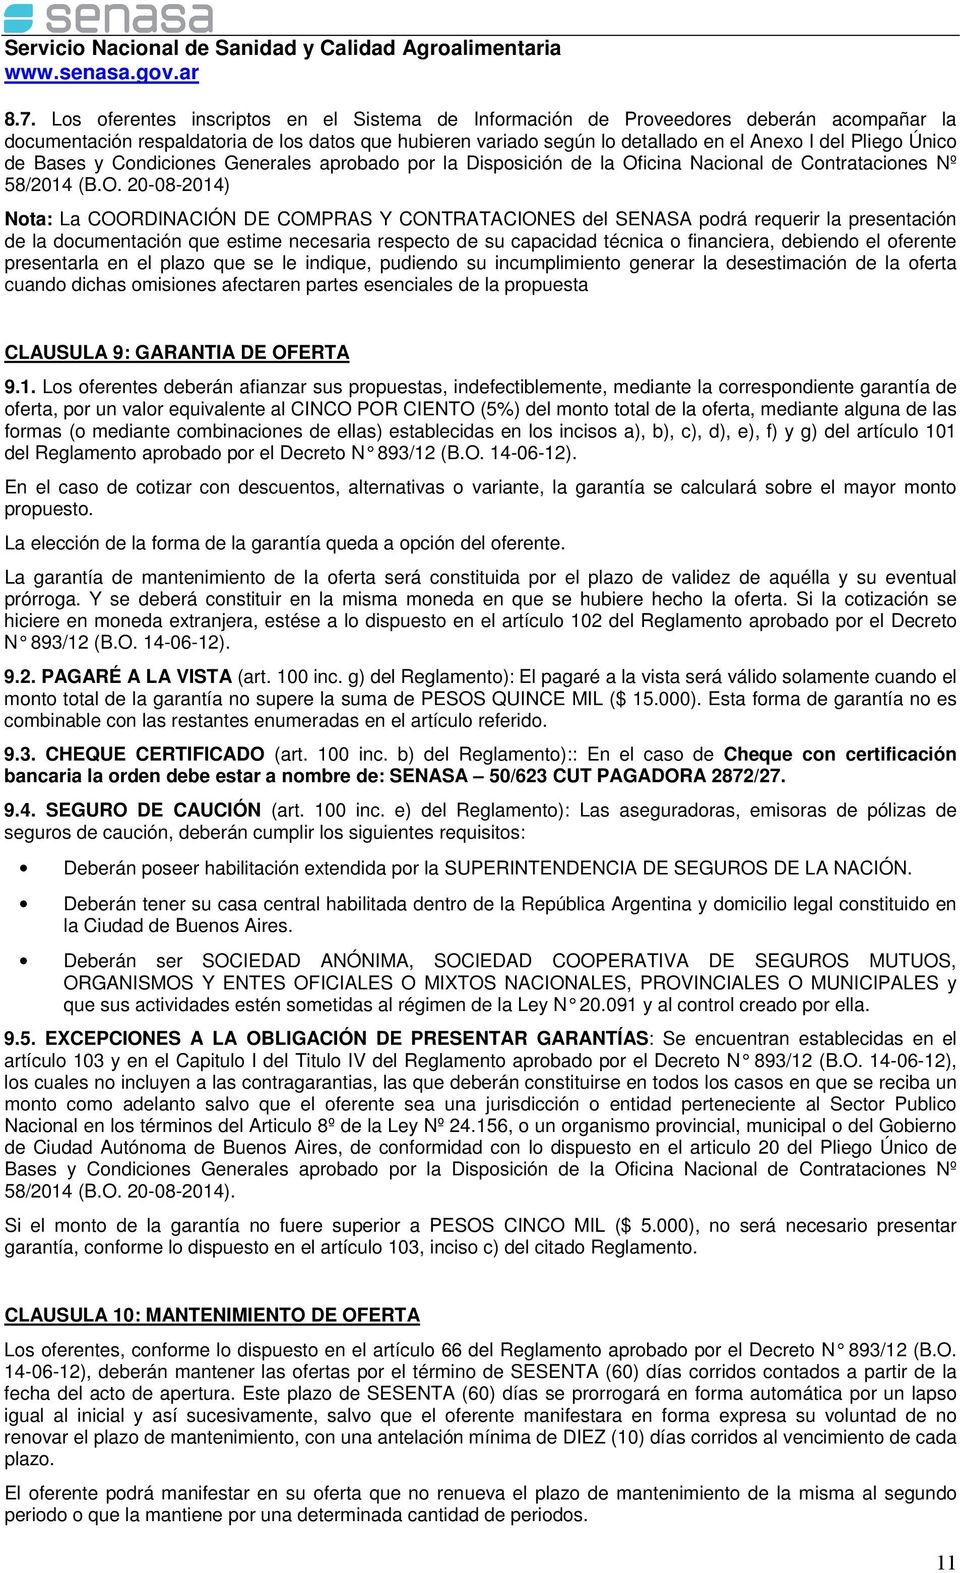 icina Nacional de Contrataciones Nº 58/2014 (B.O.